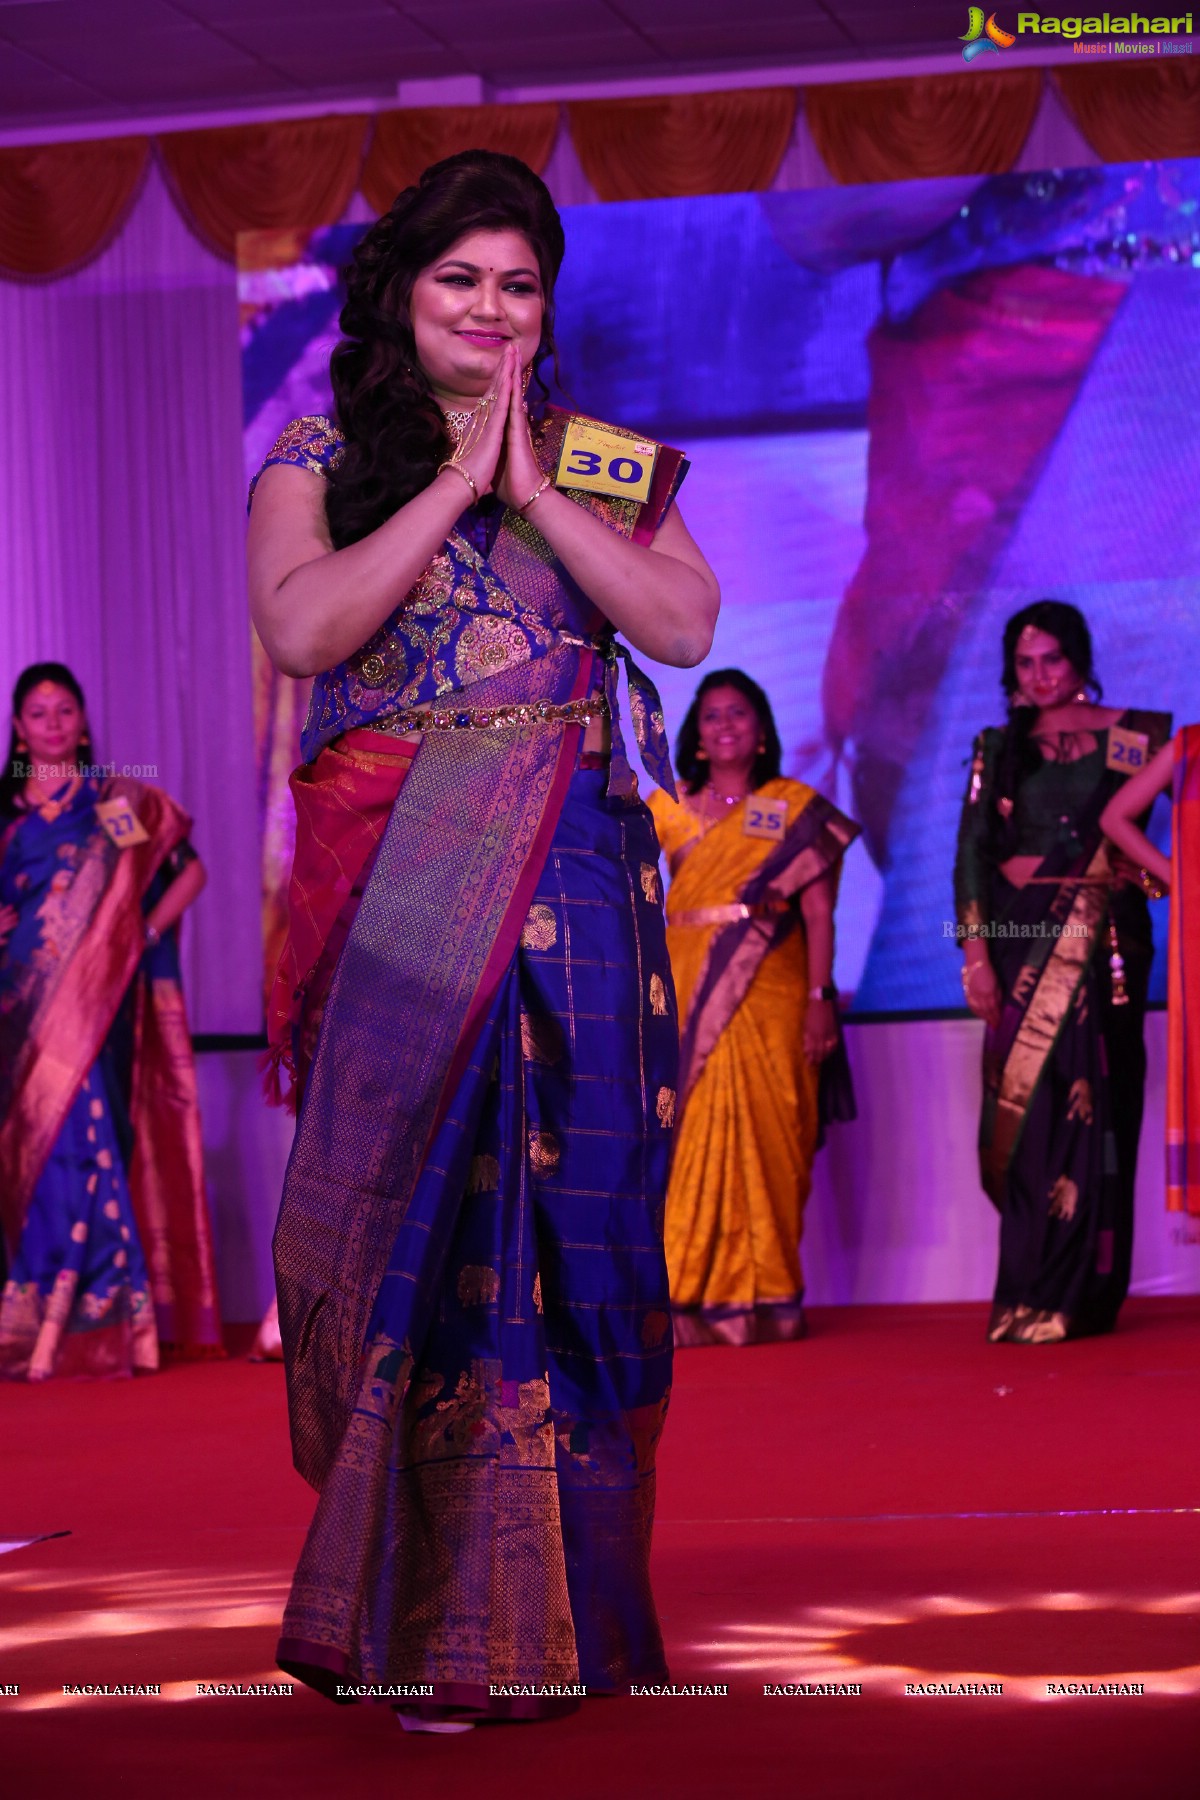 Srimathi Silk Mark 2018 at Kalinga Cultural Center